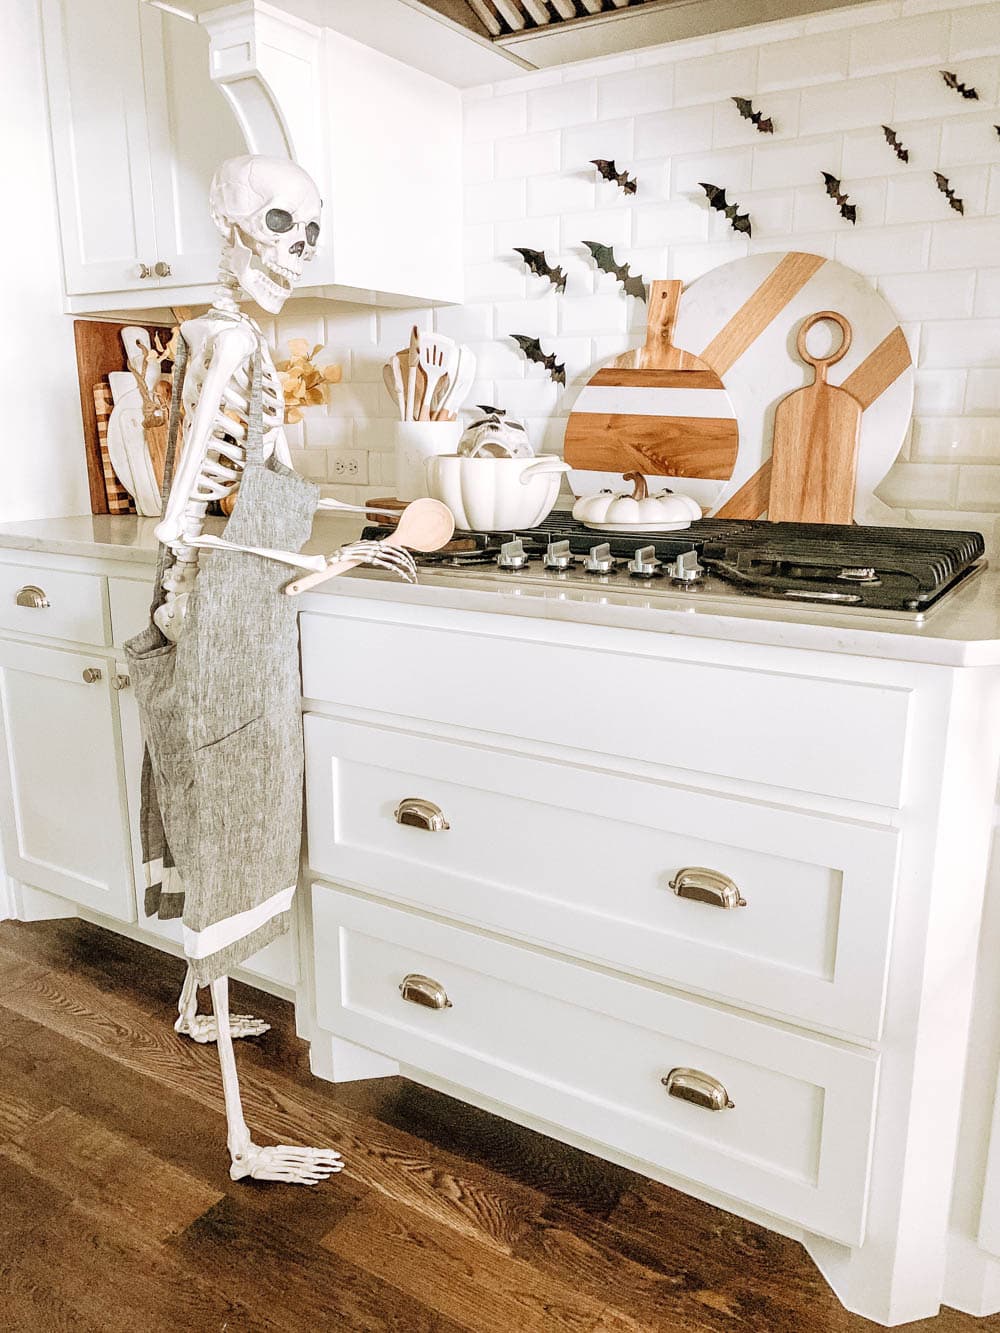 Posable skeleton cooking in a kitchen. Halloween decor ideas. #ABlissfulNest #halloween #halloweendecor